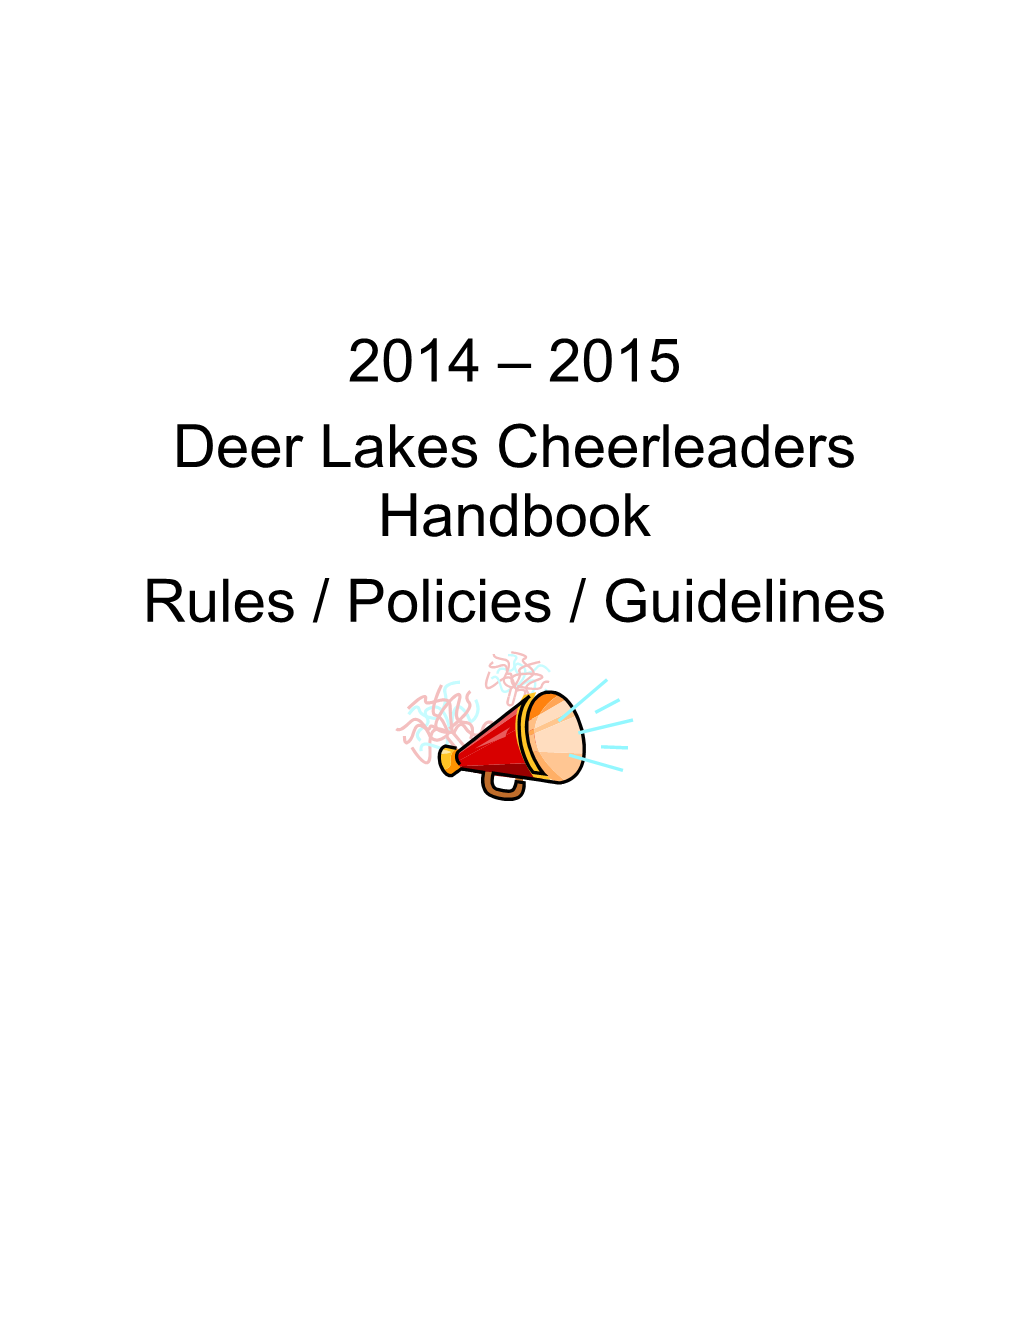 Deer Lakes Cheerleaders Handbook